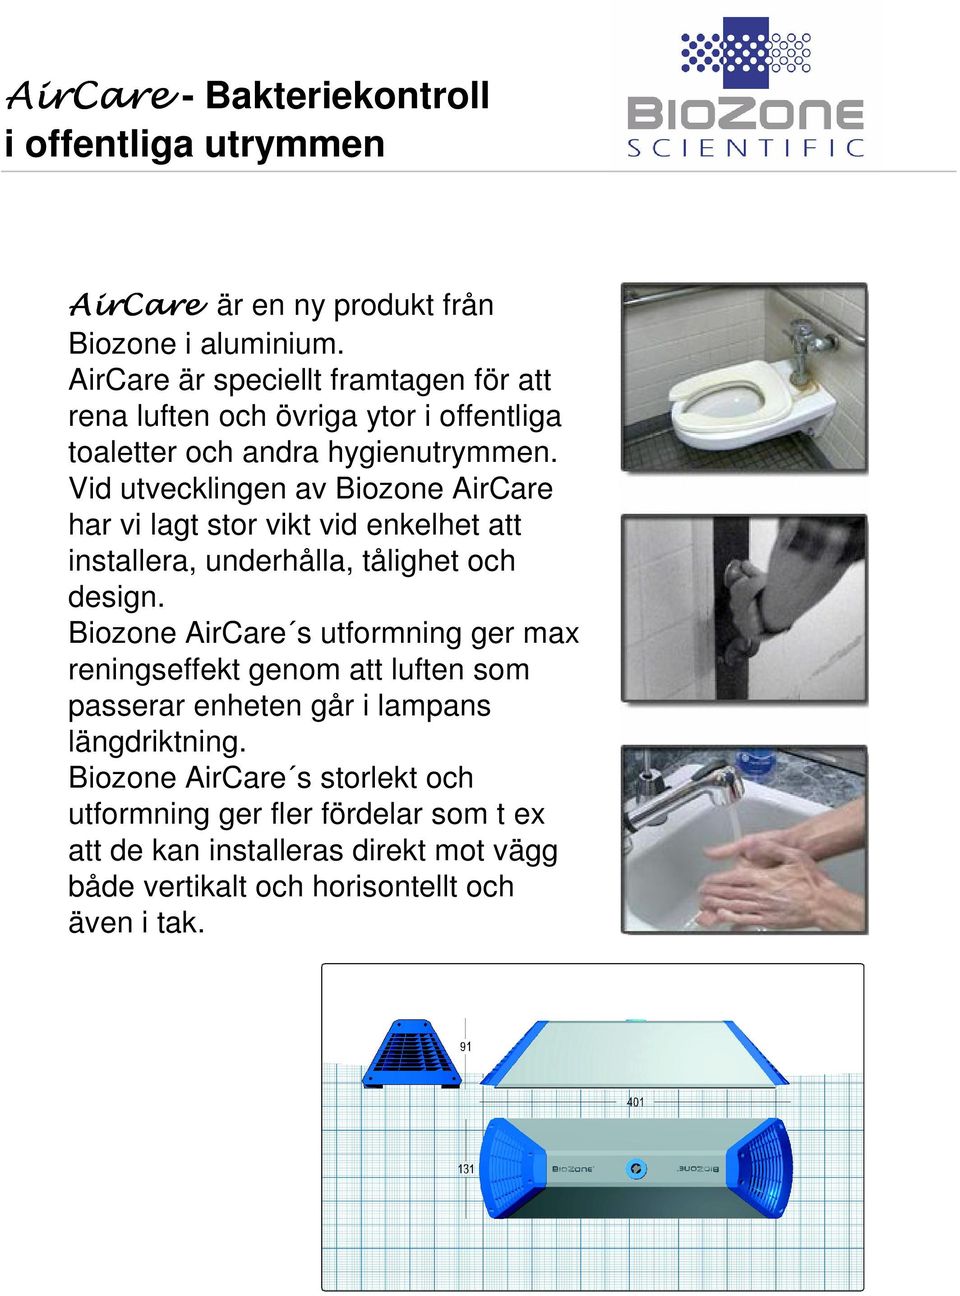 Vid utvecklingen av Biozone AirCare har vi lagt stor vikt vid enkelhet att installera, underhålla, tålighet och design.